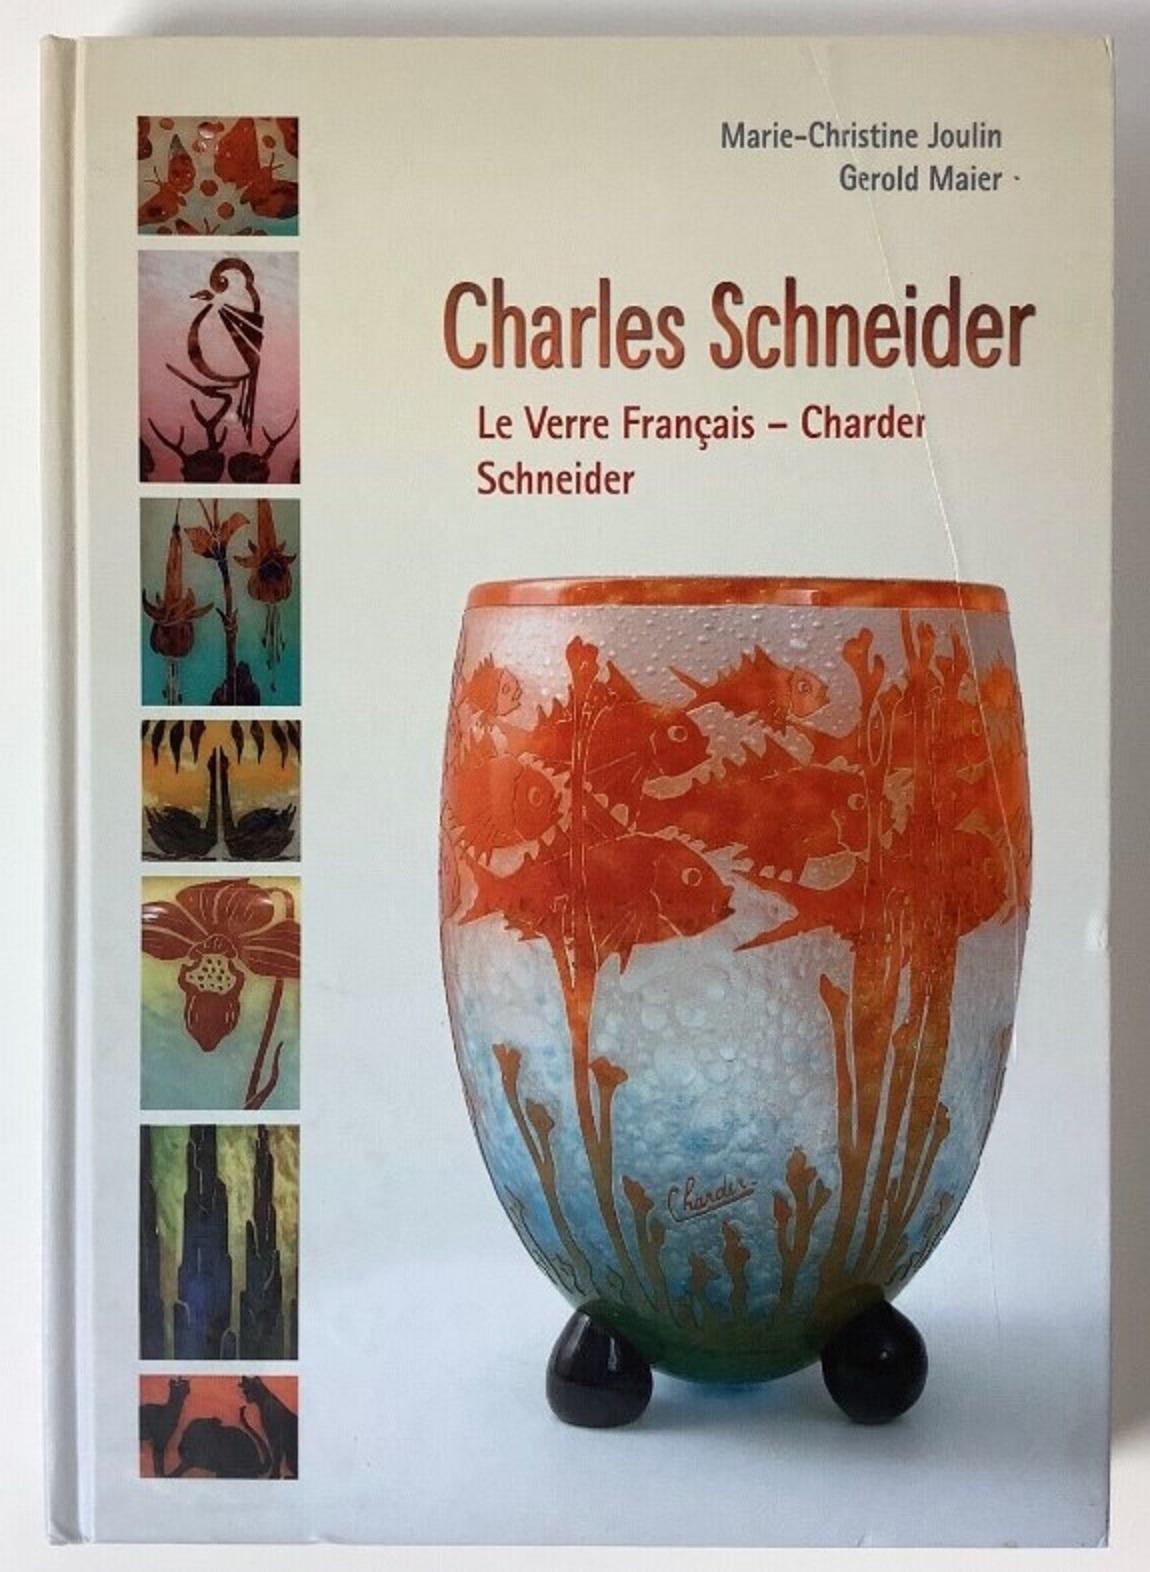 Signe du vase : Schneider 
Schneider
Charles Schneider (1881-1953) a étudié l'art dans deux des plus prestigieuses écoles d'art françaises. D'abord à l'Ecole des Beaux-Arts de Nancy, puis à l'Ecole des Beaux-Arts de Paris. Pendant son séjour à